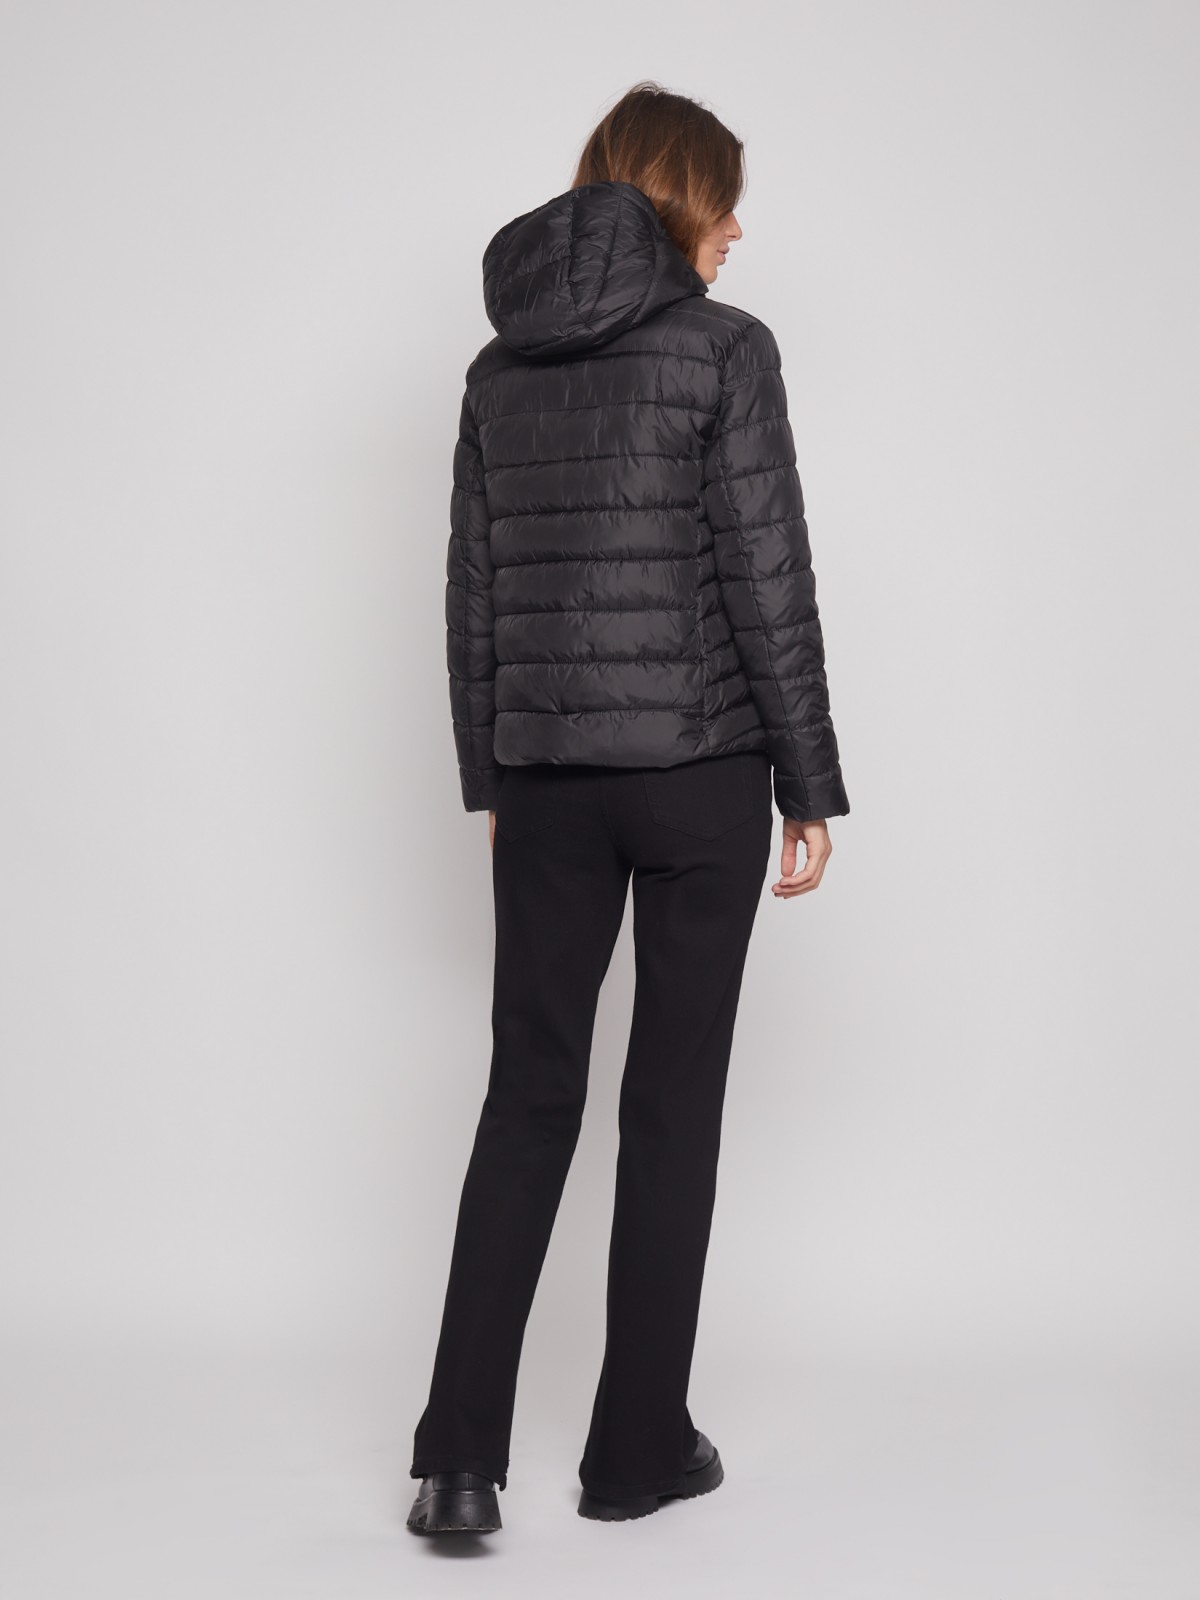 Утеплённая стёганая куртка с капюшоном zolla 022335112044, цвет черный, размер S - фото 6